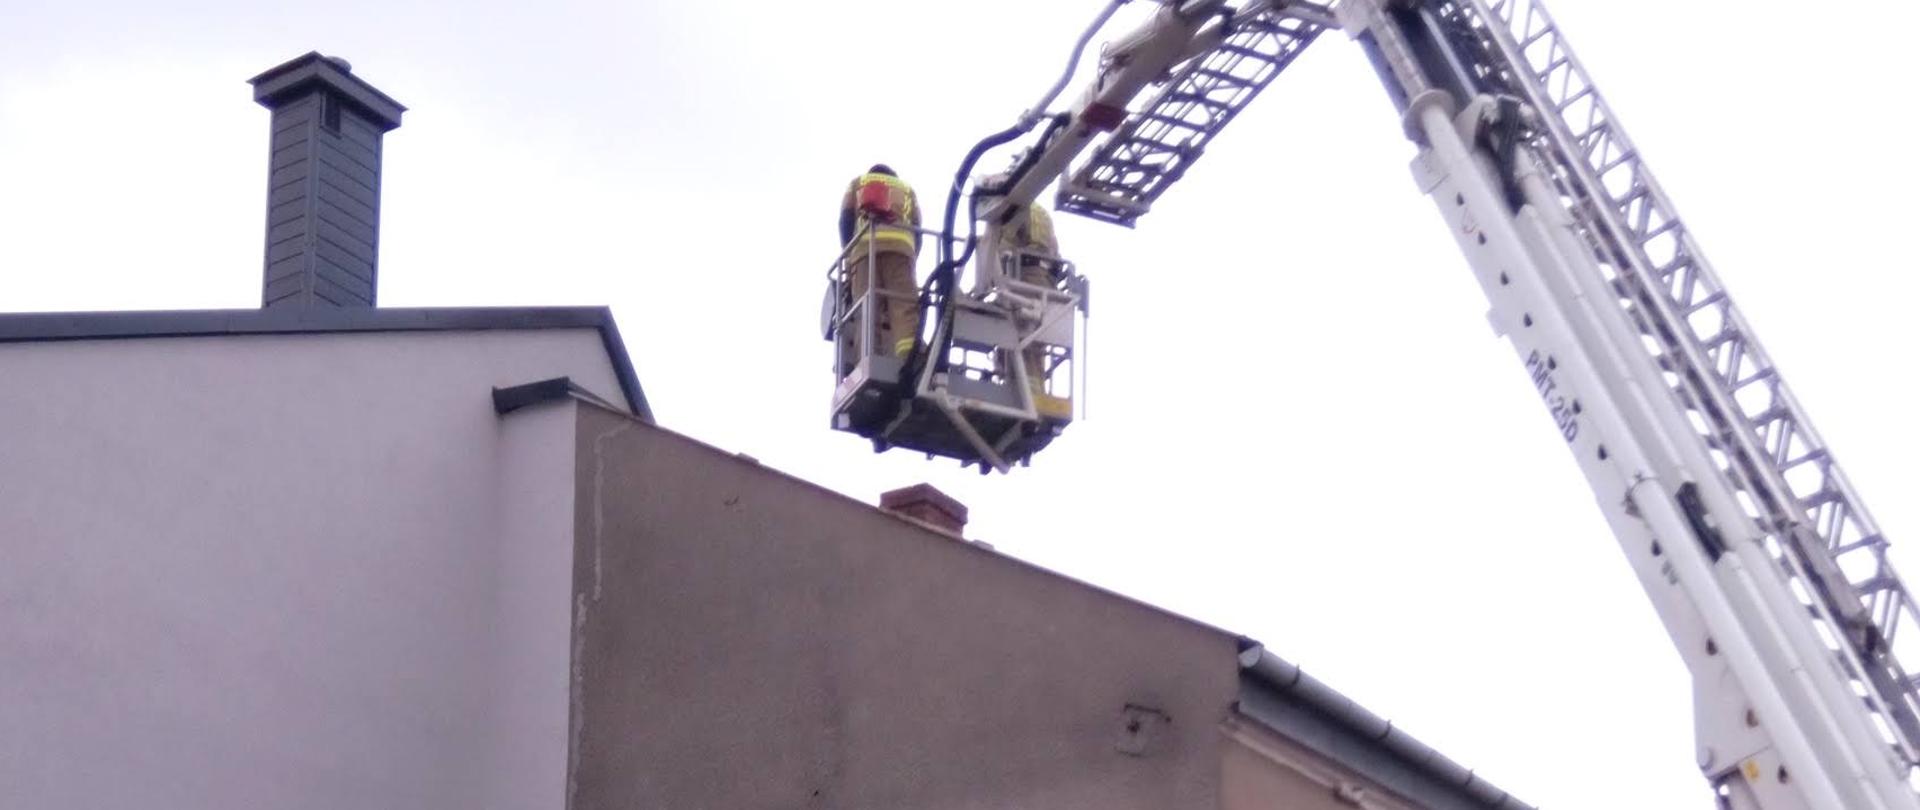 Zdjęcie przedstawia podnośnik hydrauliczy wraz z trzema strażakami, dwóch znajdujących się w koszu oraz jednego operatora podnośnika. Podnośnik hydrauliczny stoi przed budynkiem mieszkalnym 